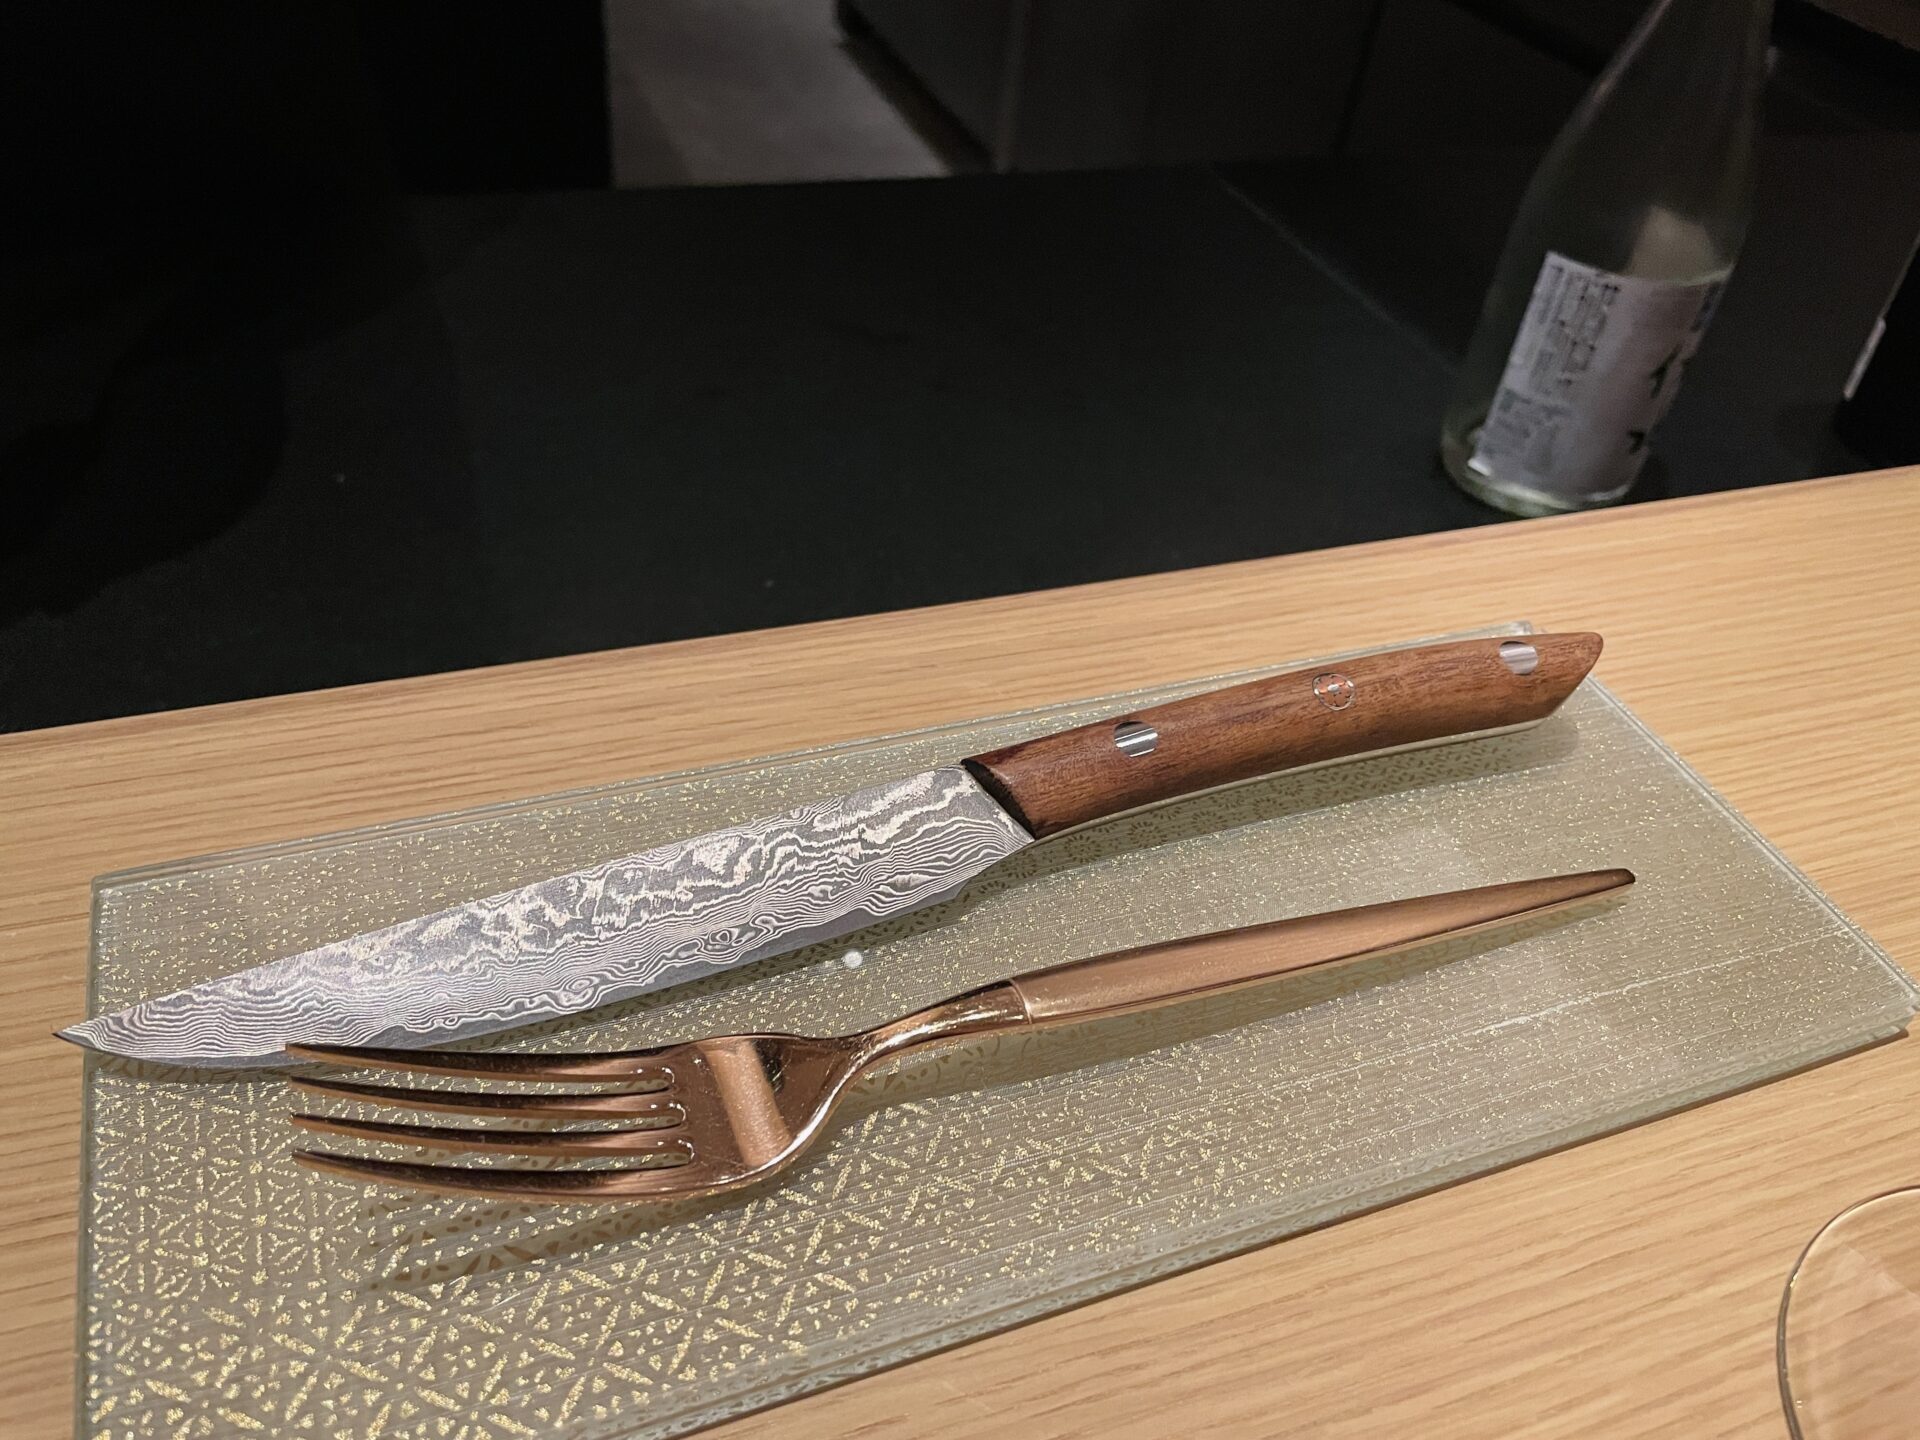 「ROKU KYOTO(ロク京都)」TENJIN シェフズテーブル ディナーのナイフ選び